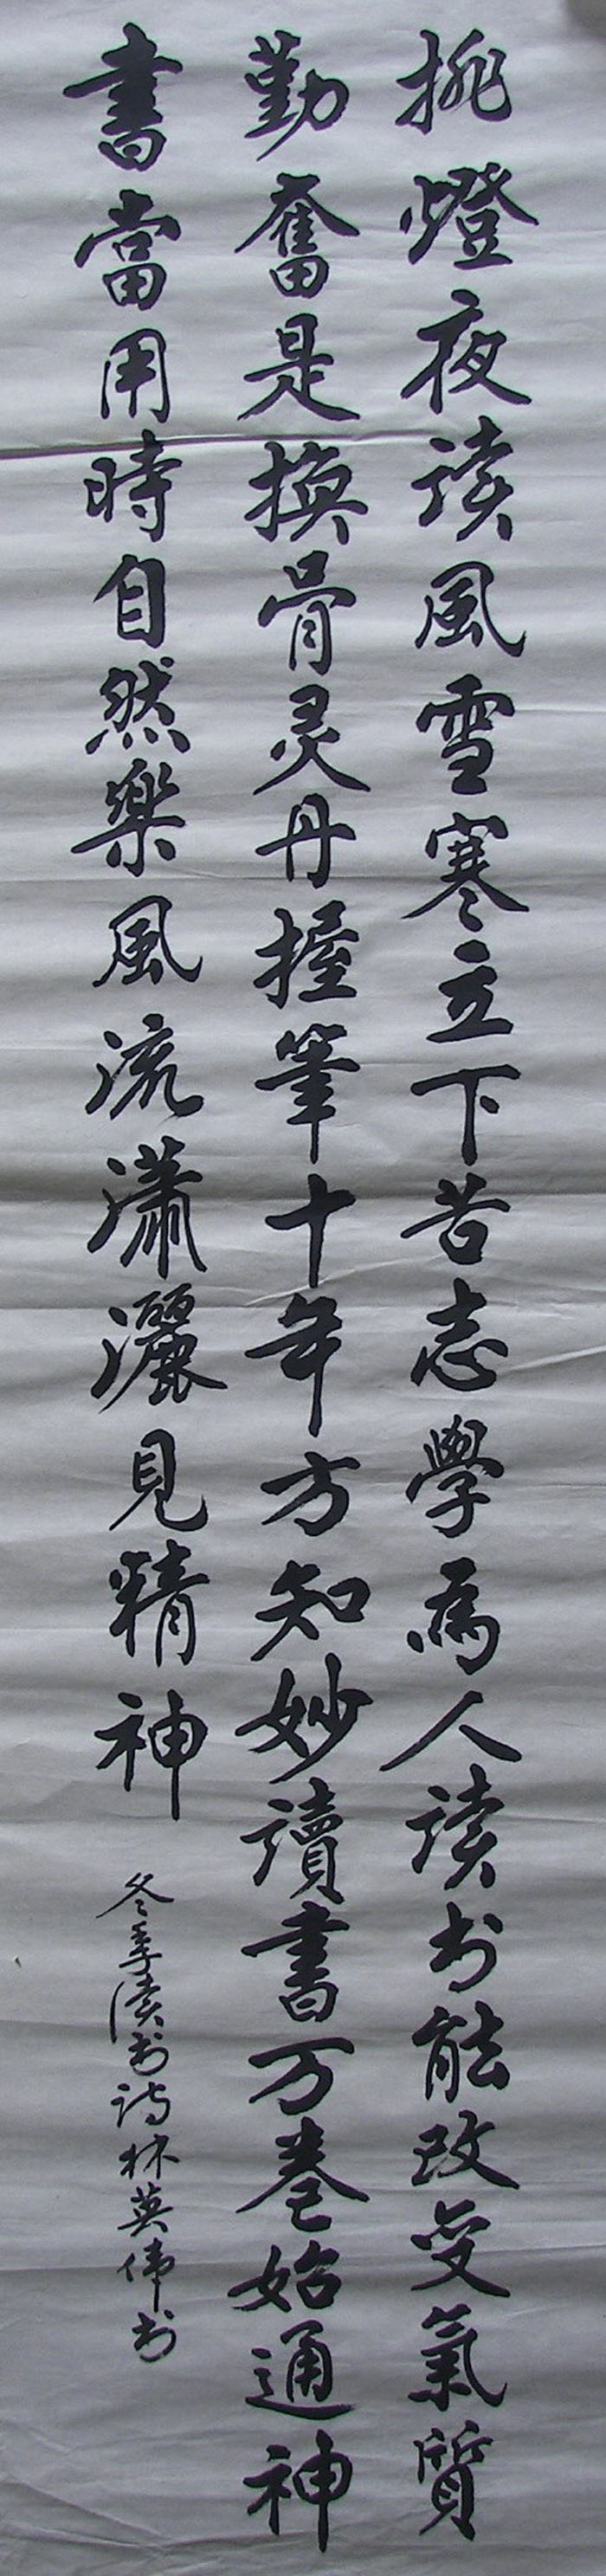 OEEA LamYiWei Calligraphy